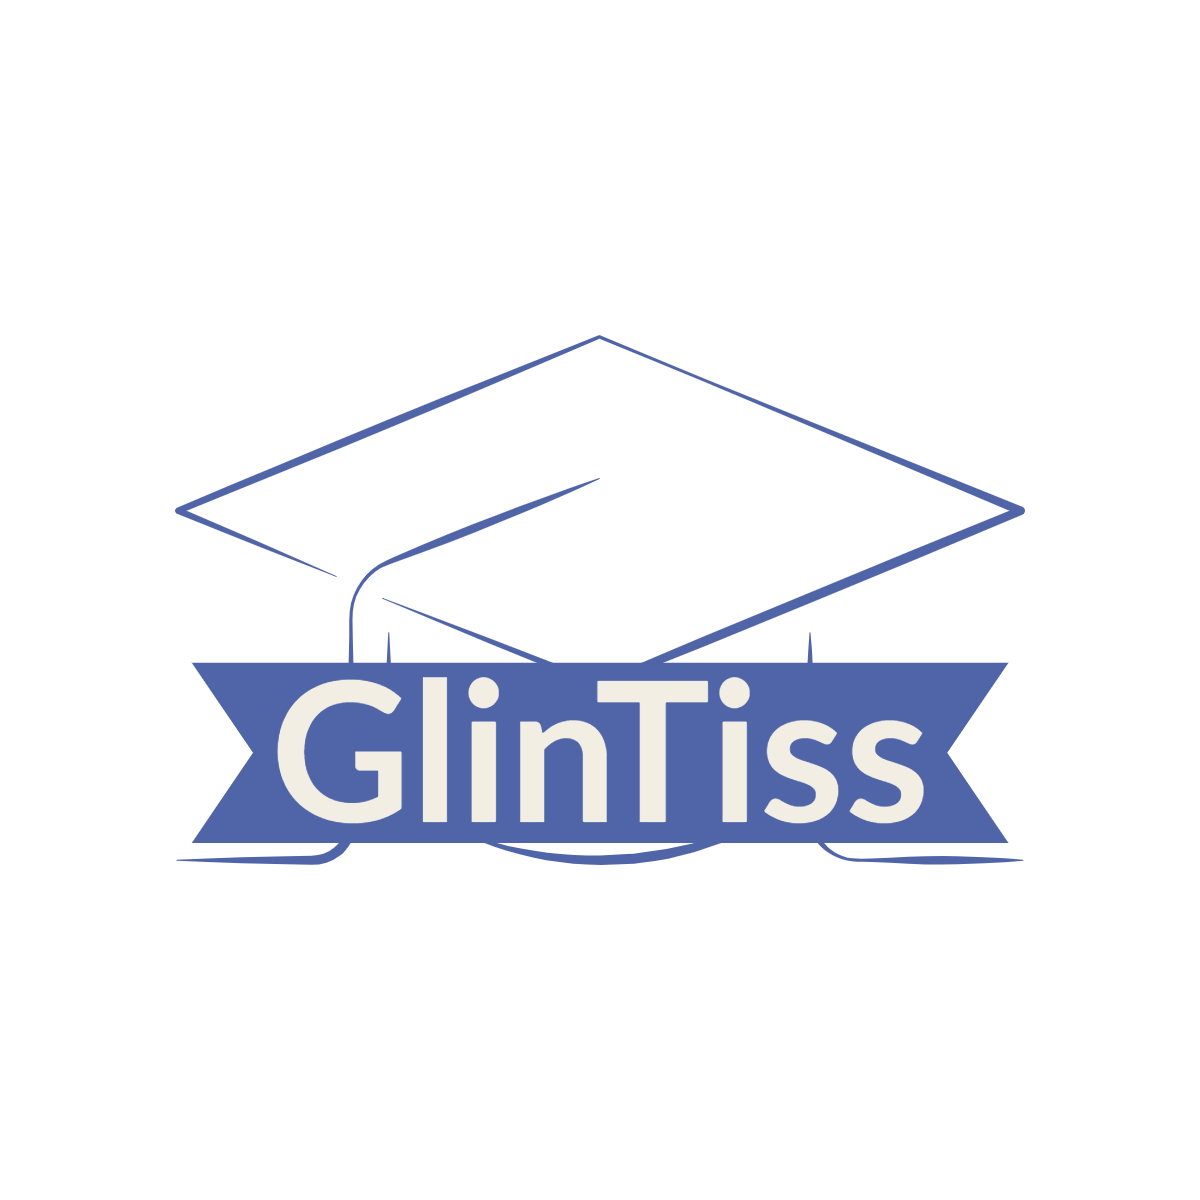 GlinTiss Ltd